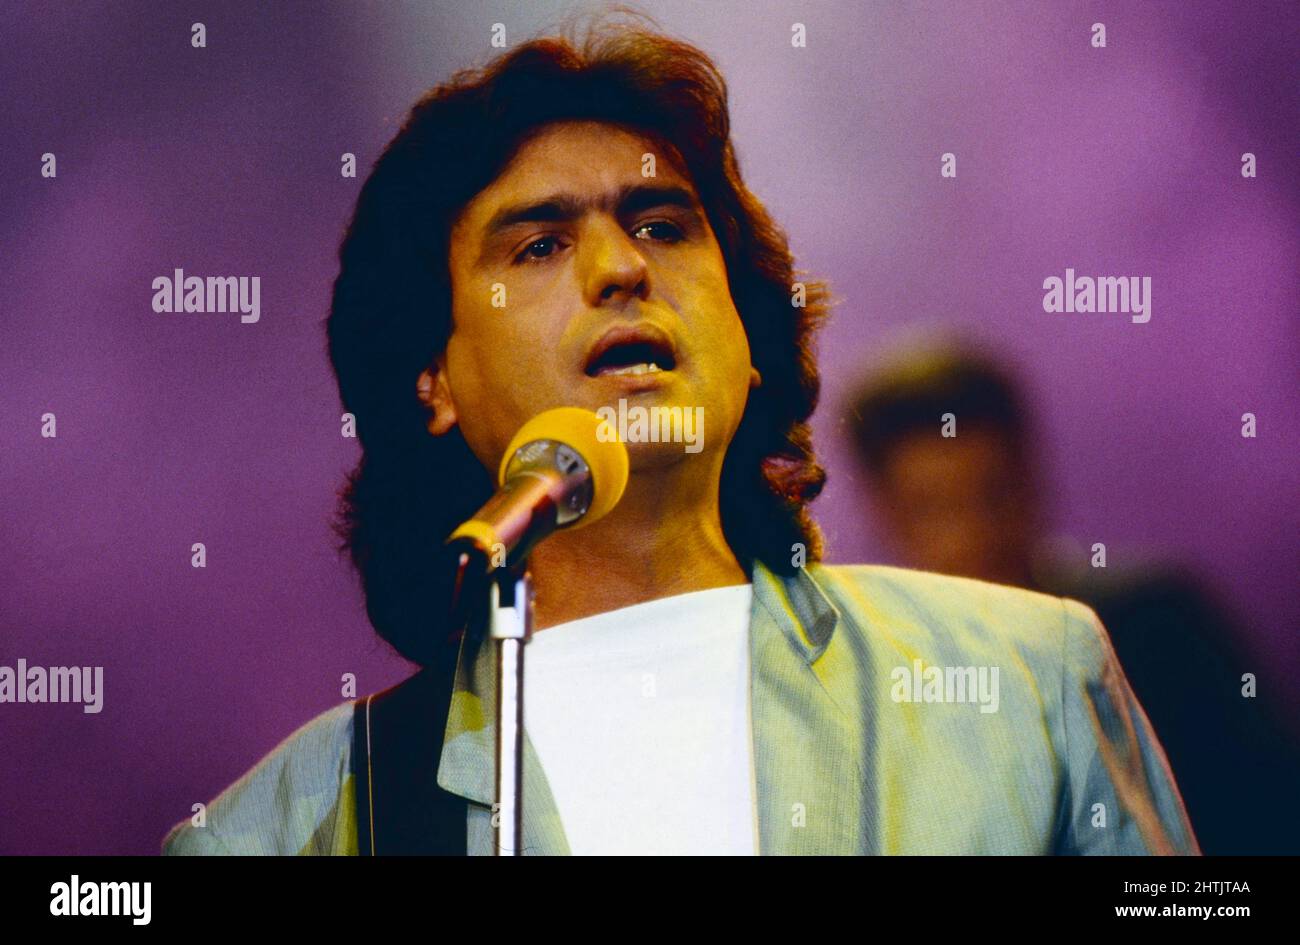 Toto Cutugno, italienischer Sänger und Songschreiber, bei einem Auftritt, Deutschland um 1990. Stock Photo